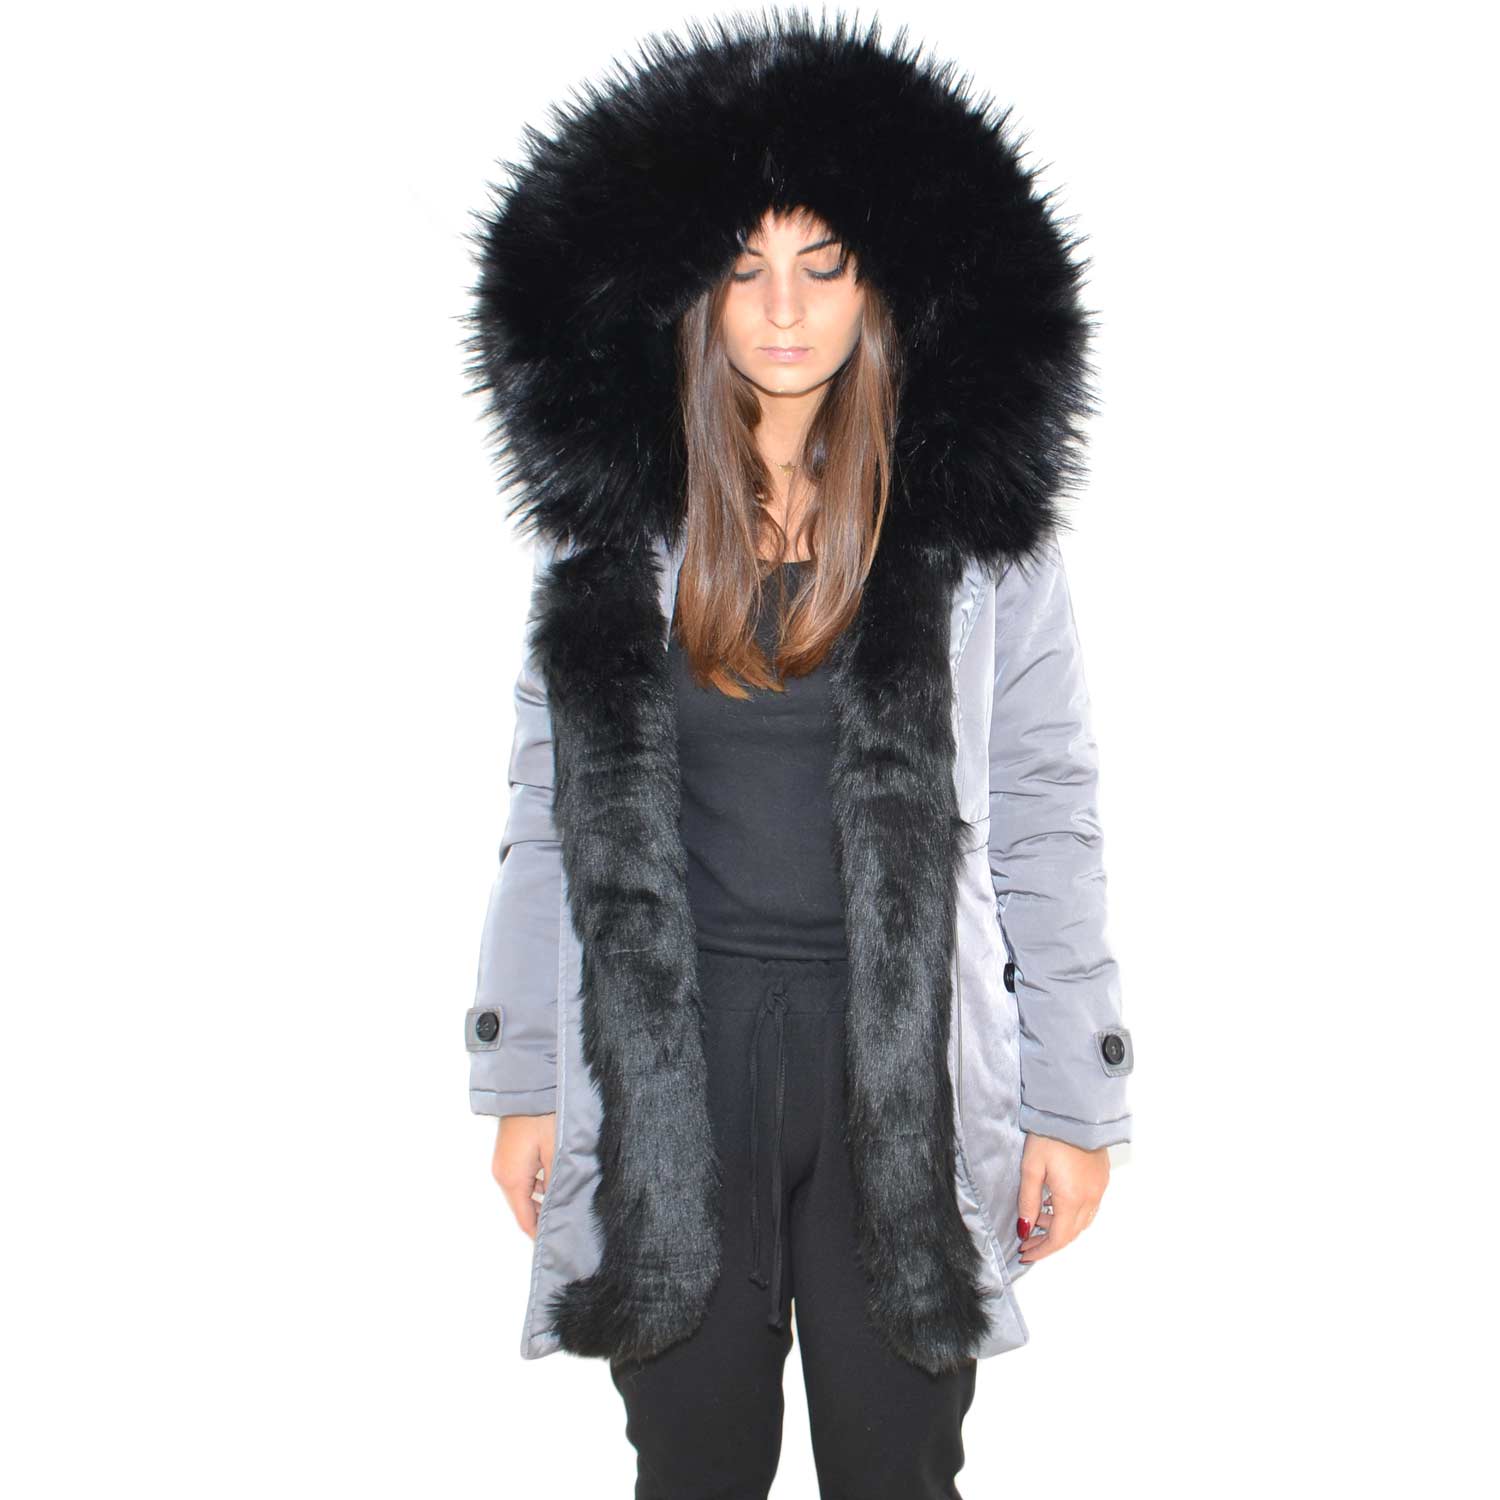 Parka donna invernale con pelliccia nero eco giacca giubbotto piumino lungo grigio pelo extra volume imbottito caldo mod